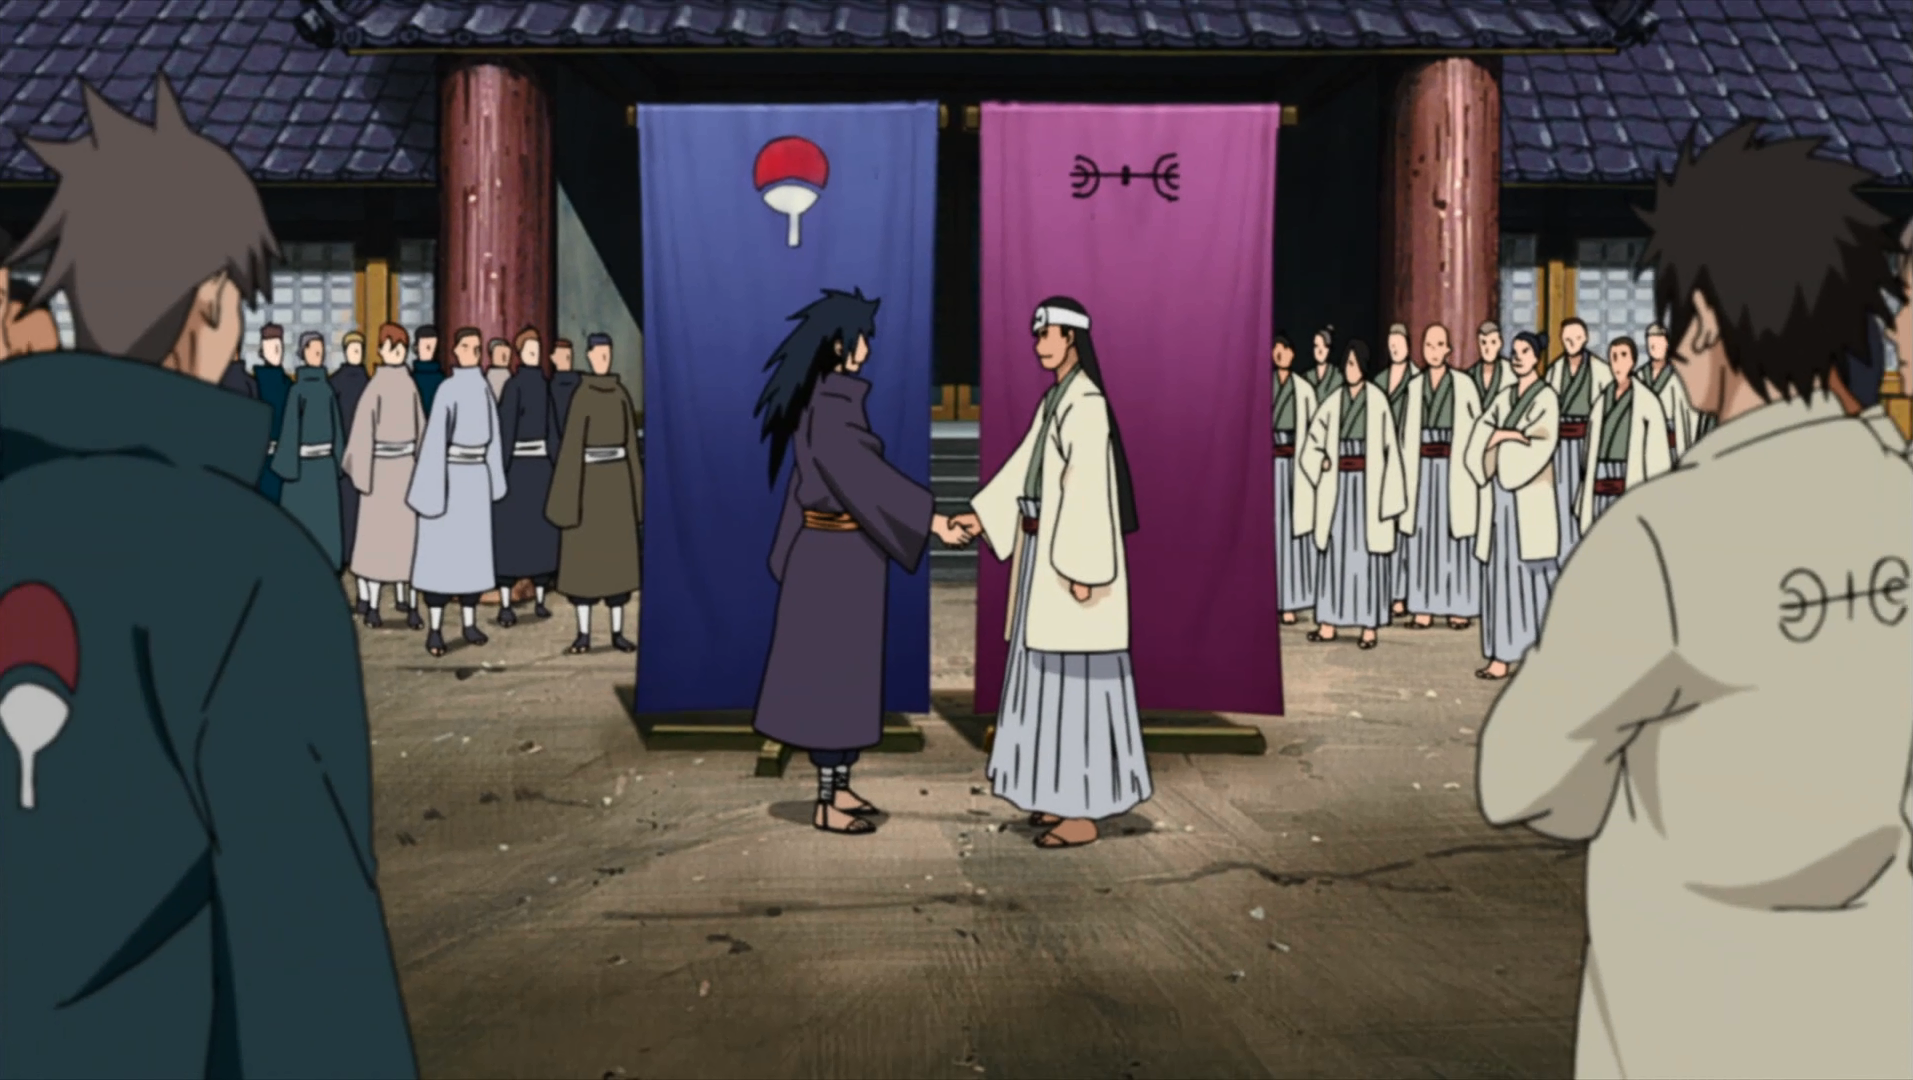 naruto uzumaki and sasuke uchiha vs madara uchiha